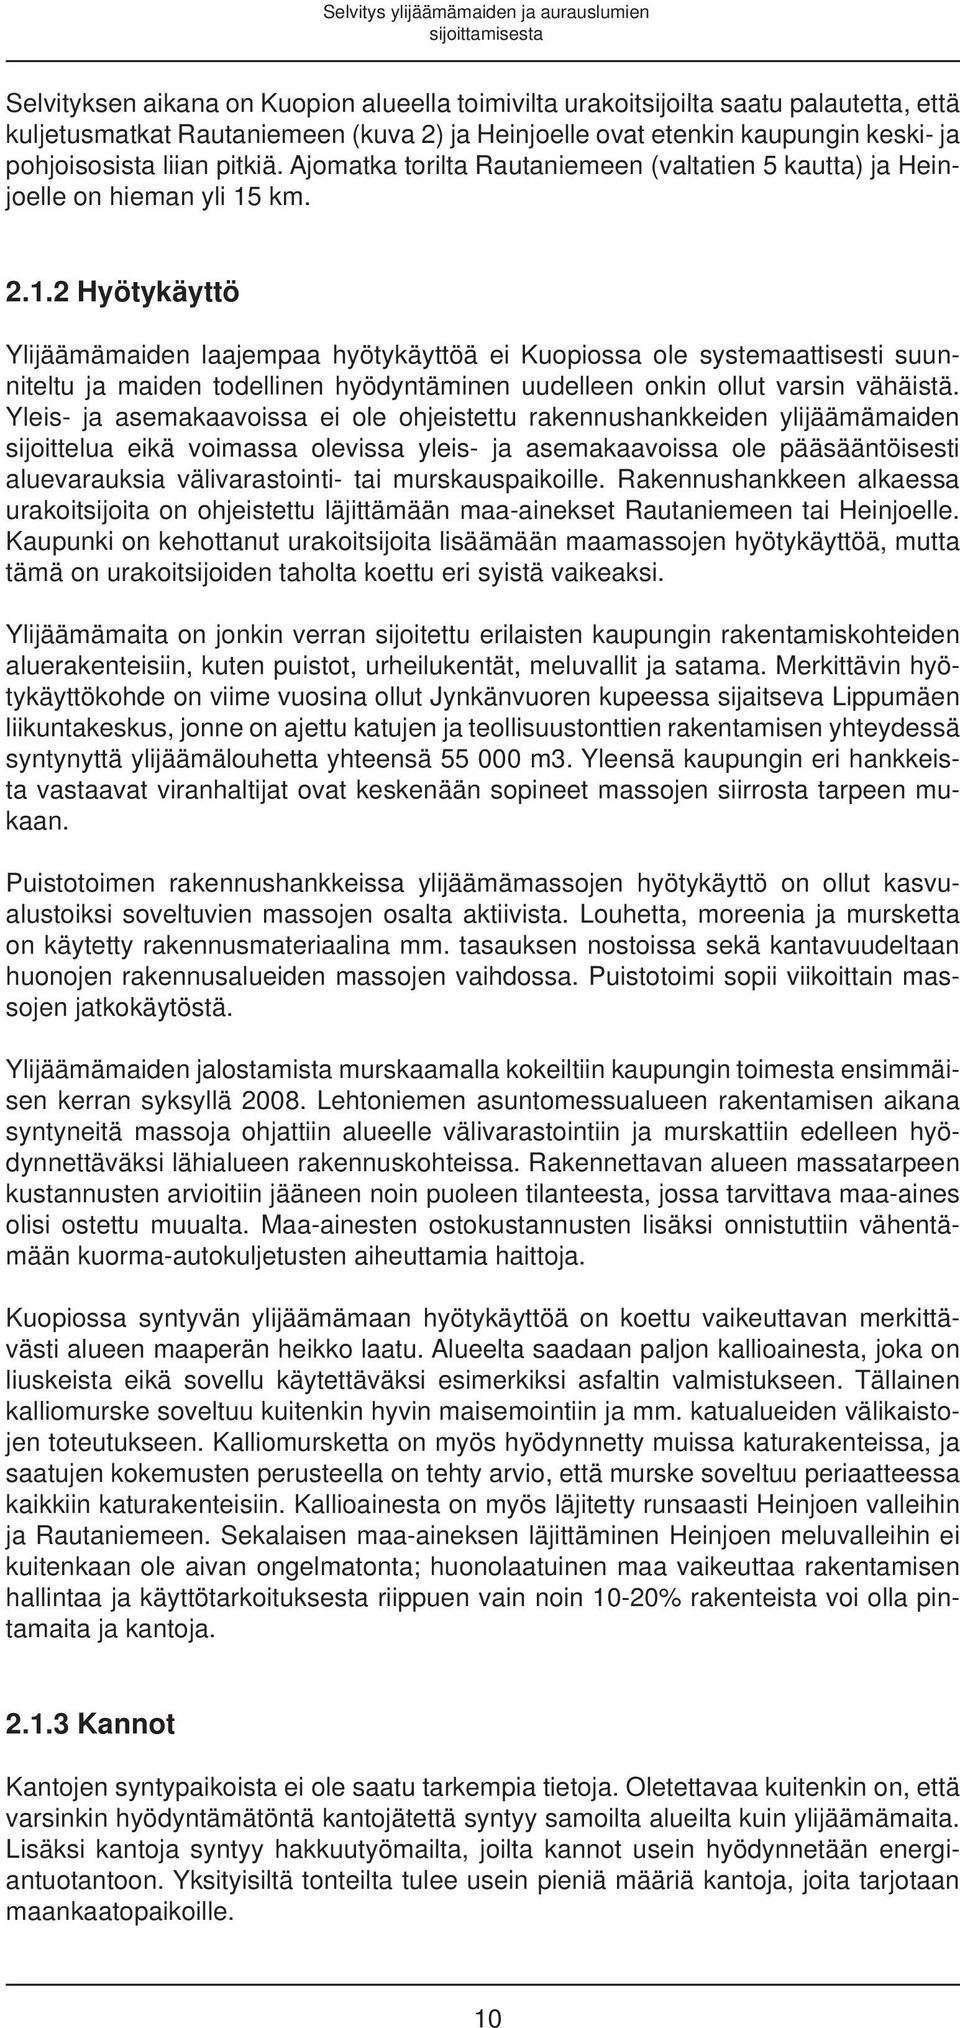 km. 2.1.2 Hyötykäyttö Ylijäämämaiden laajempaa hyötykäyttöä ei Kuopiossa ole systemaattisesti suunniteltu ja maiden todellinen hyödyntäminen uudelleen onkin ollut varsin vähäistä.